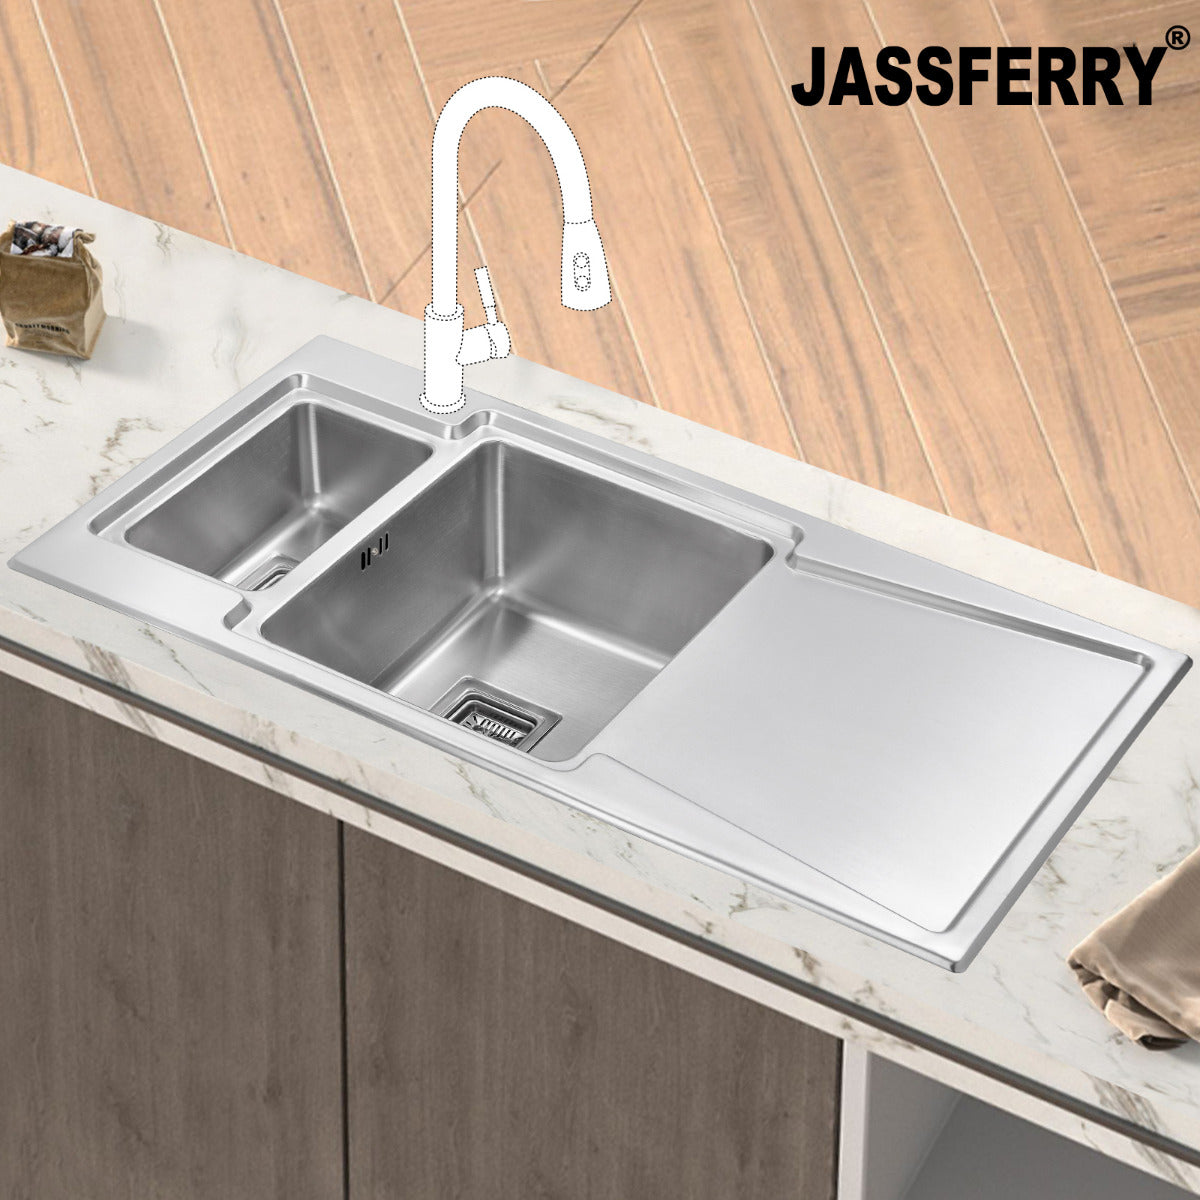 JassferryJASSFERRY Brilliant Stainless Steel Kitchen Sink One&Half Bowl Righthand DrainerKitchen Sink